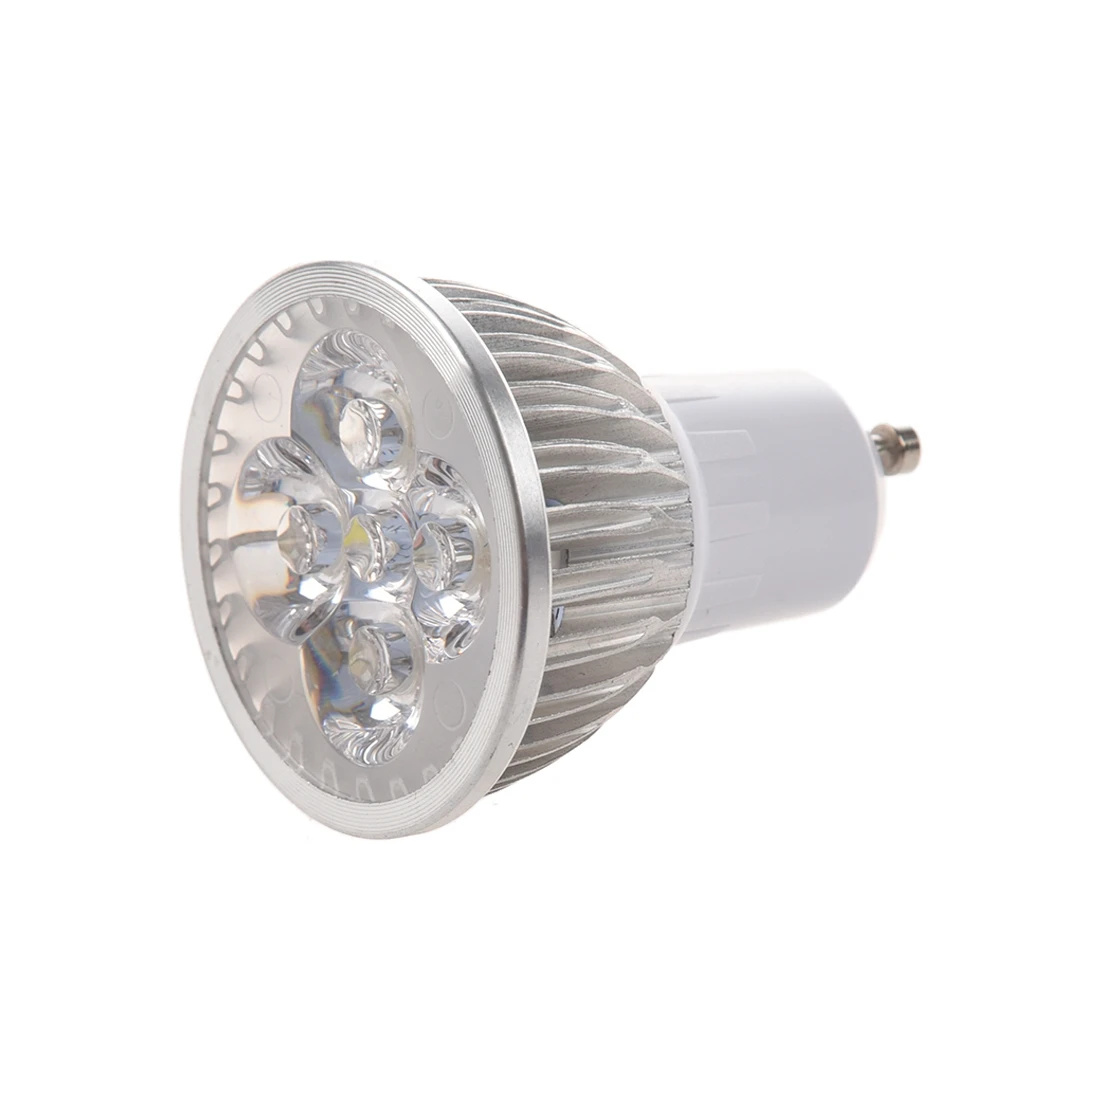 

4 светодиодный GU10 лампочка 4W холодный белый 85-265V